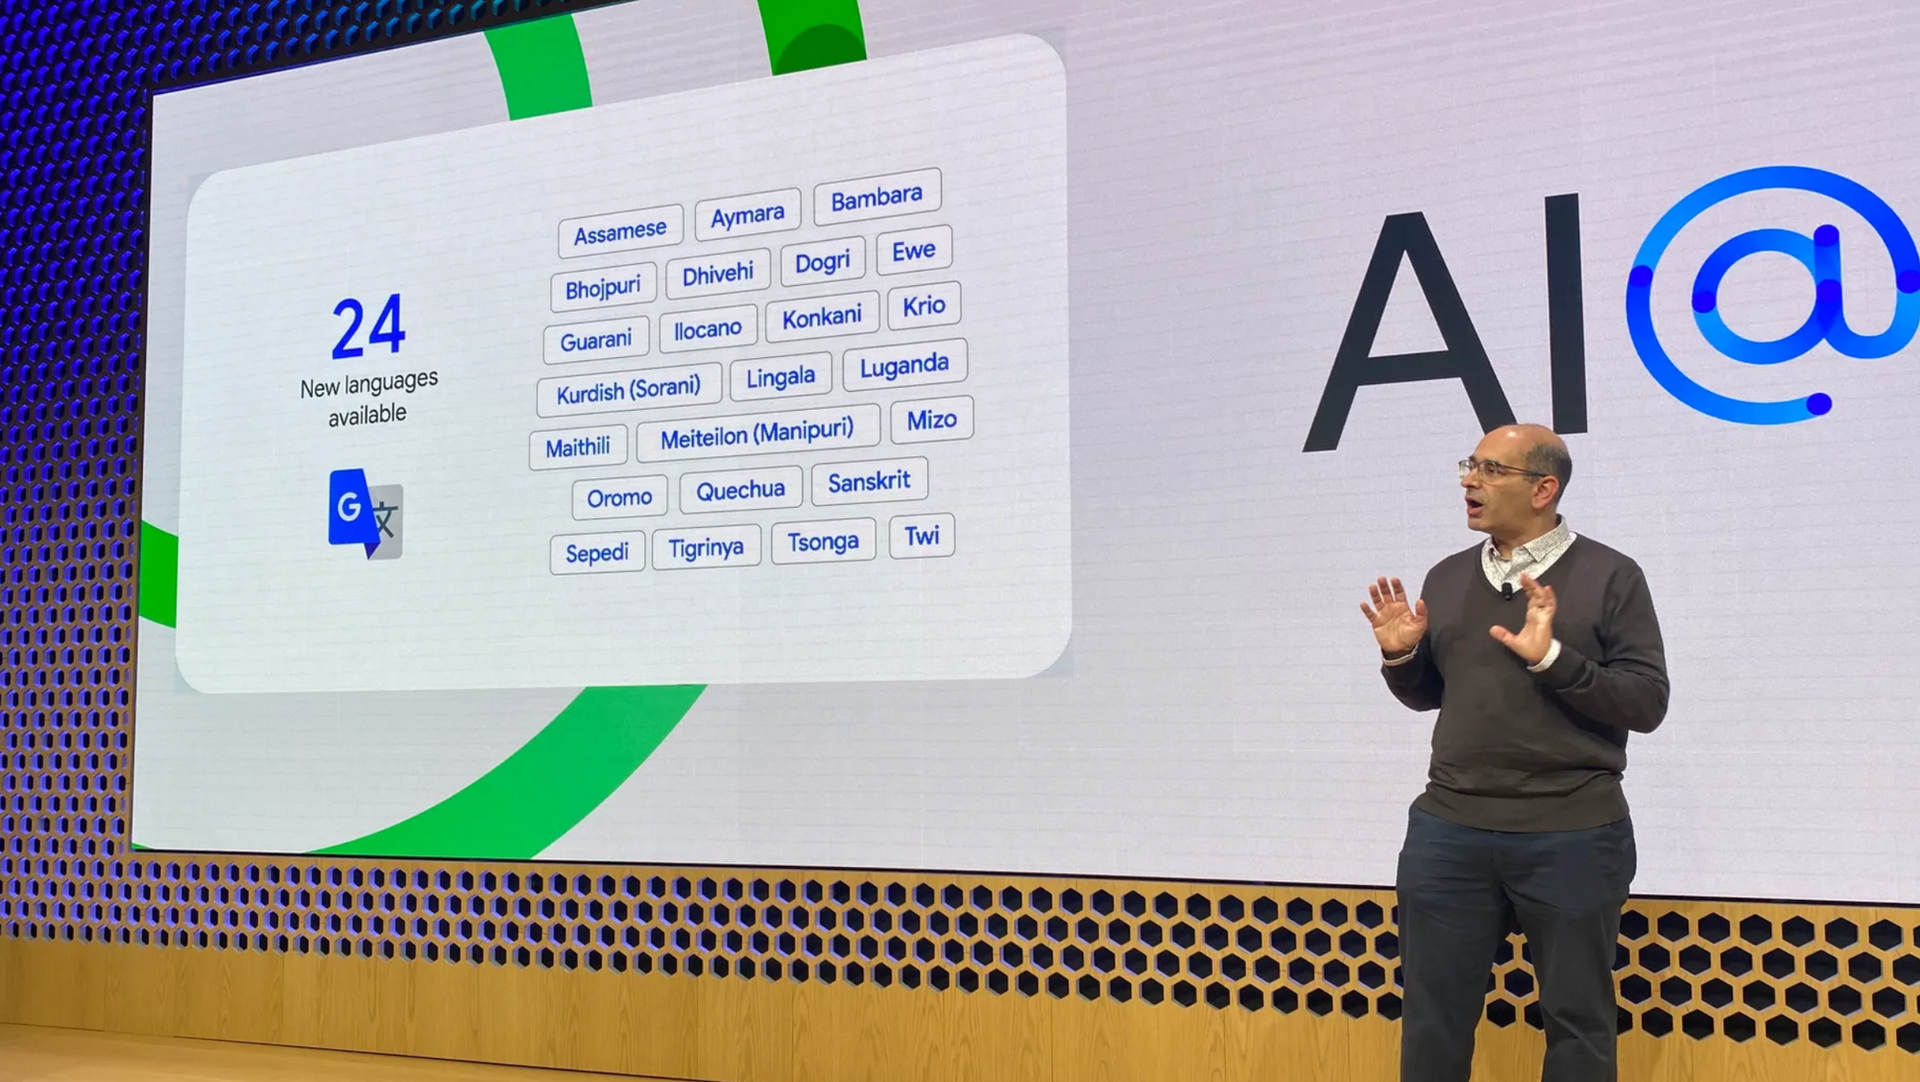 Google, Meta chạy đua dịch thêm cả nghìn ngôn ngữ nhờ sử dụng AI - Ảnh 1.